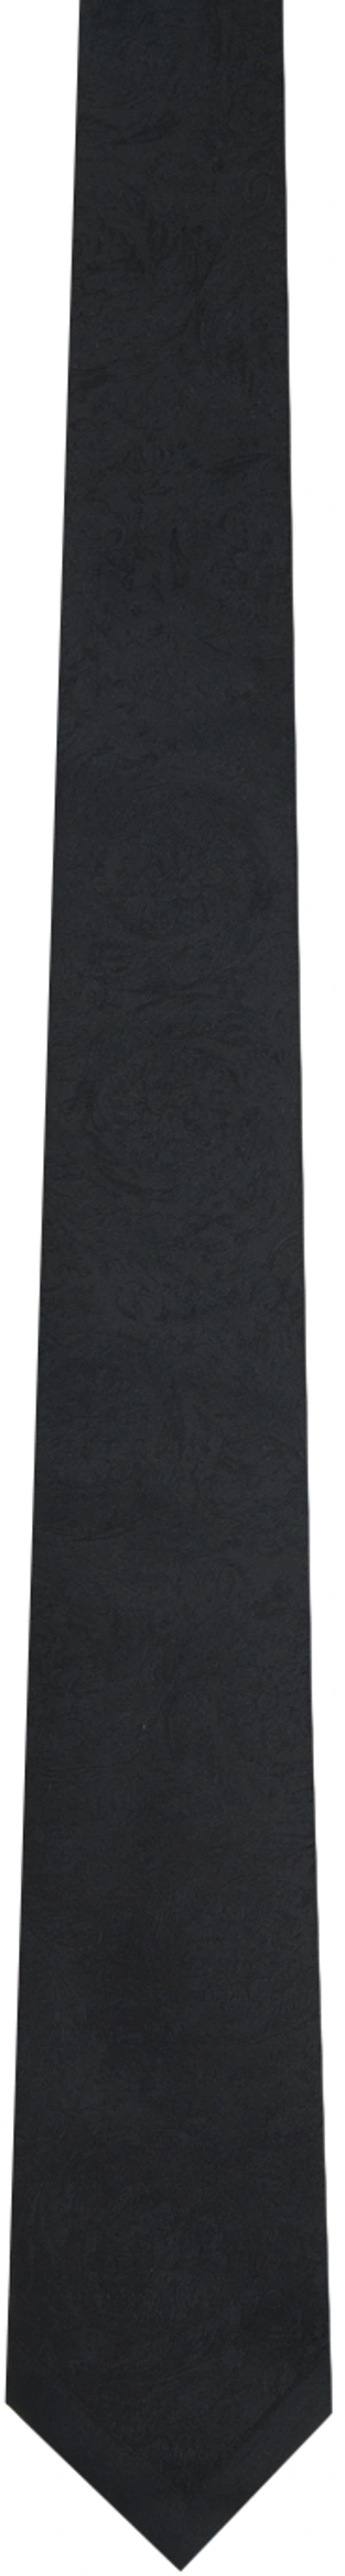 Versace Black Barocco Tie In 1b000-black